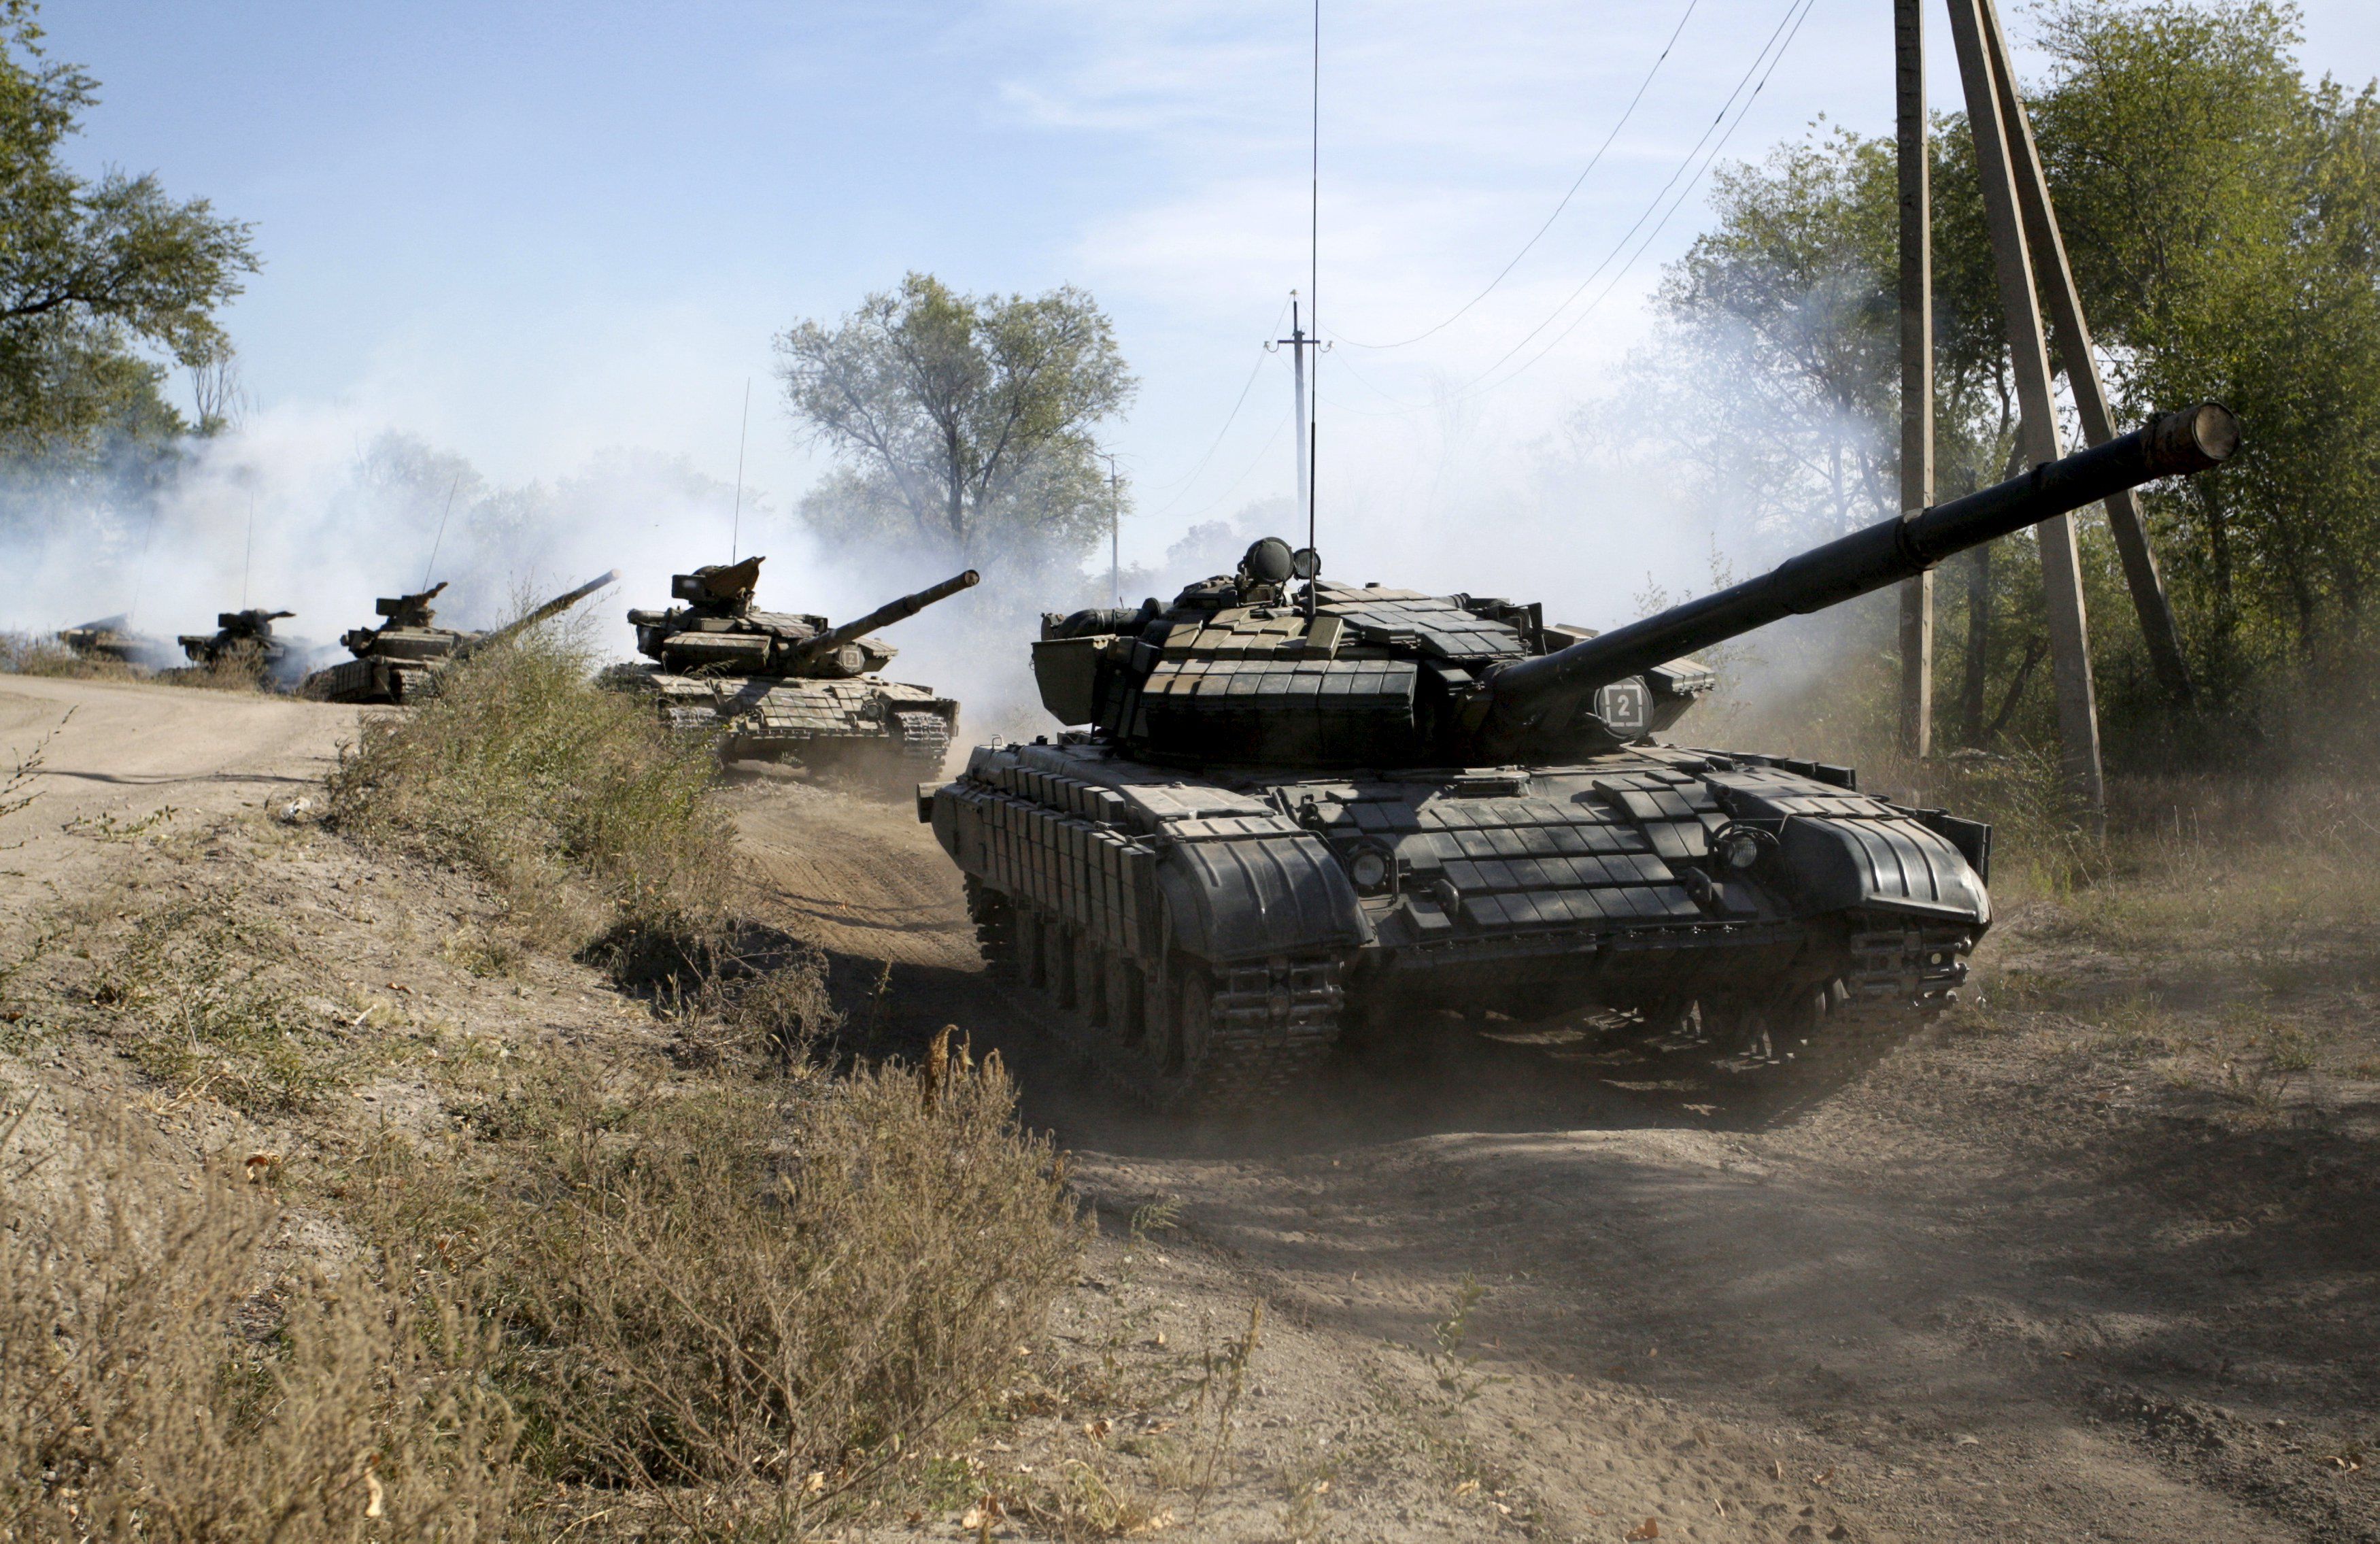 Разведка ВСУ засекает танки "ДНР" на передовой с 20 км: опубликовано видео из Донбасса - кадры